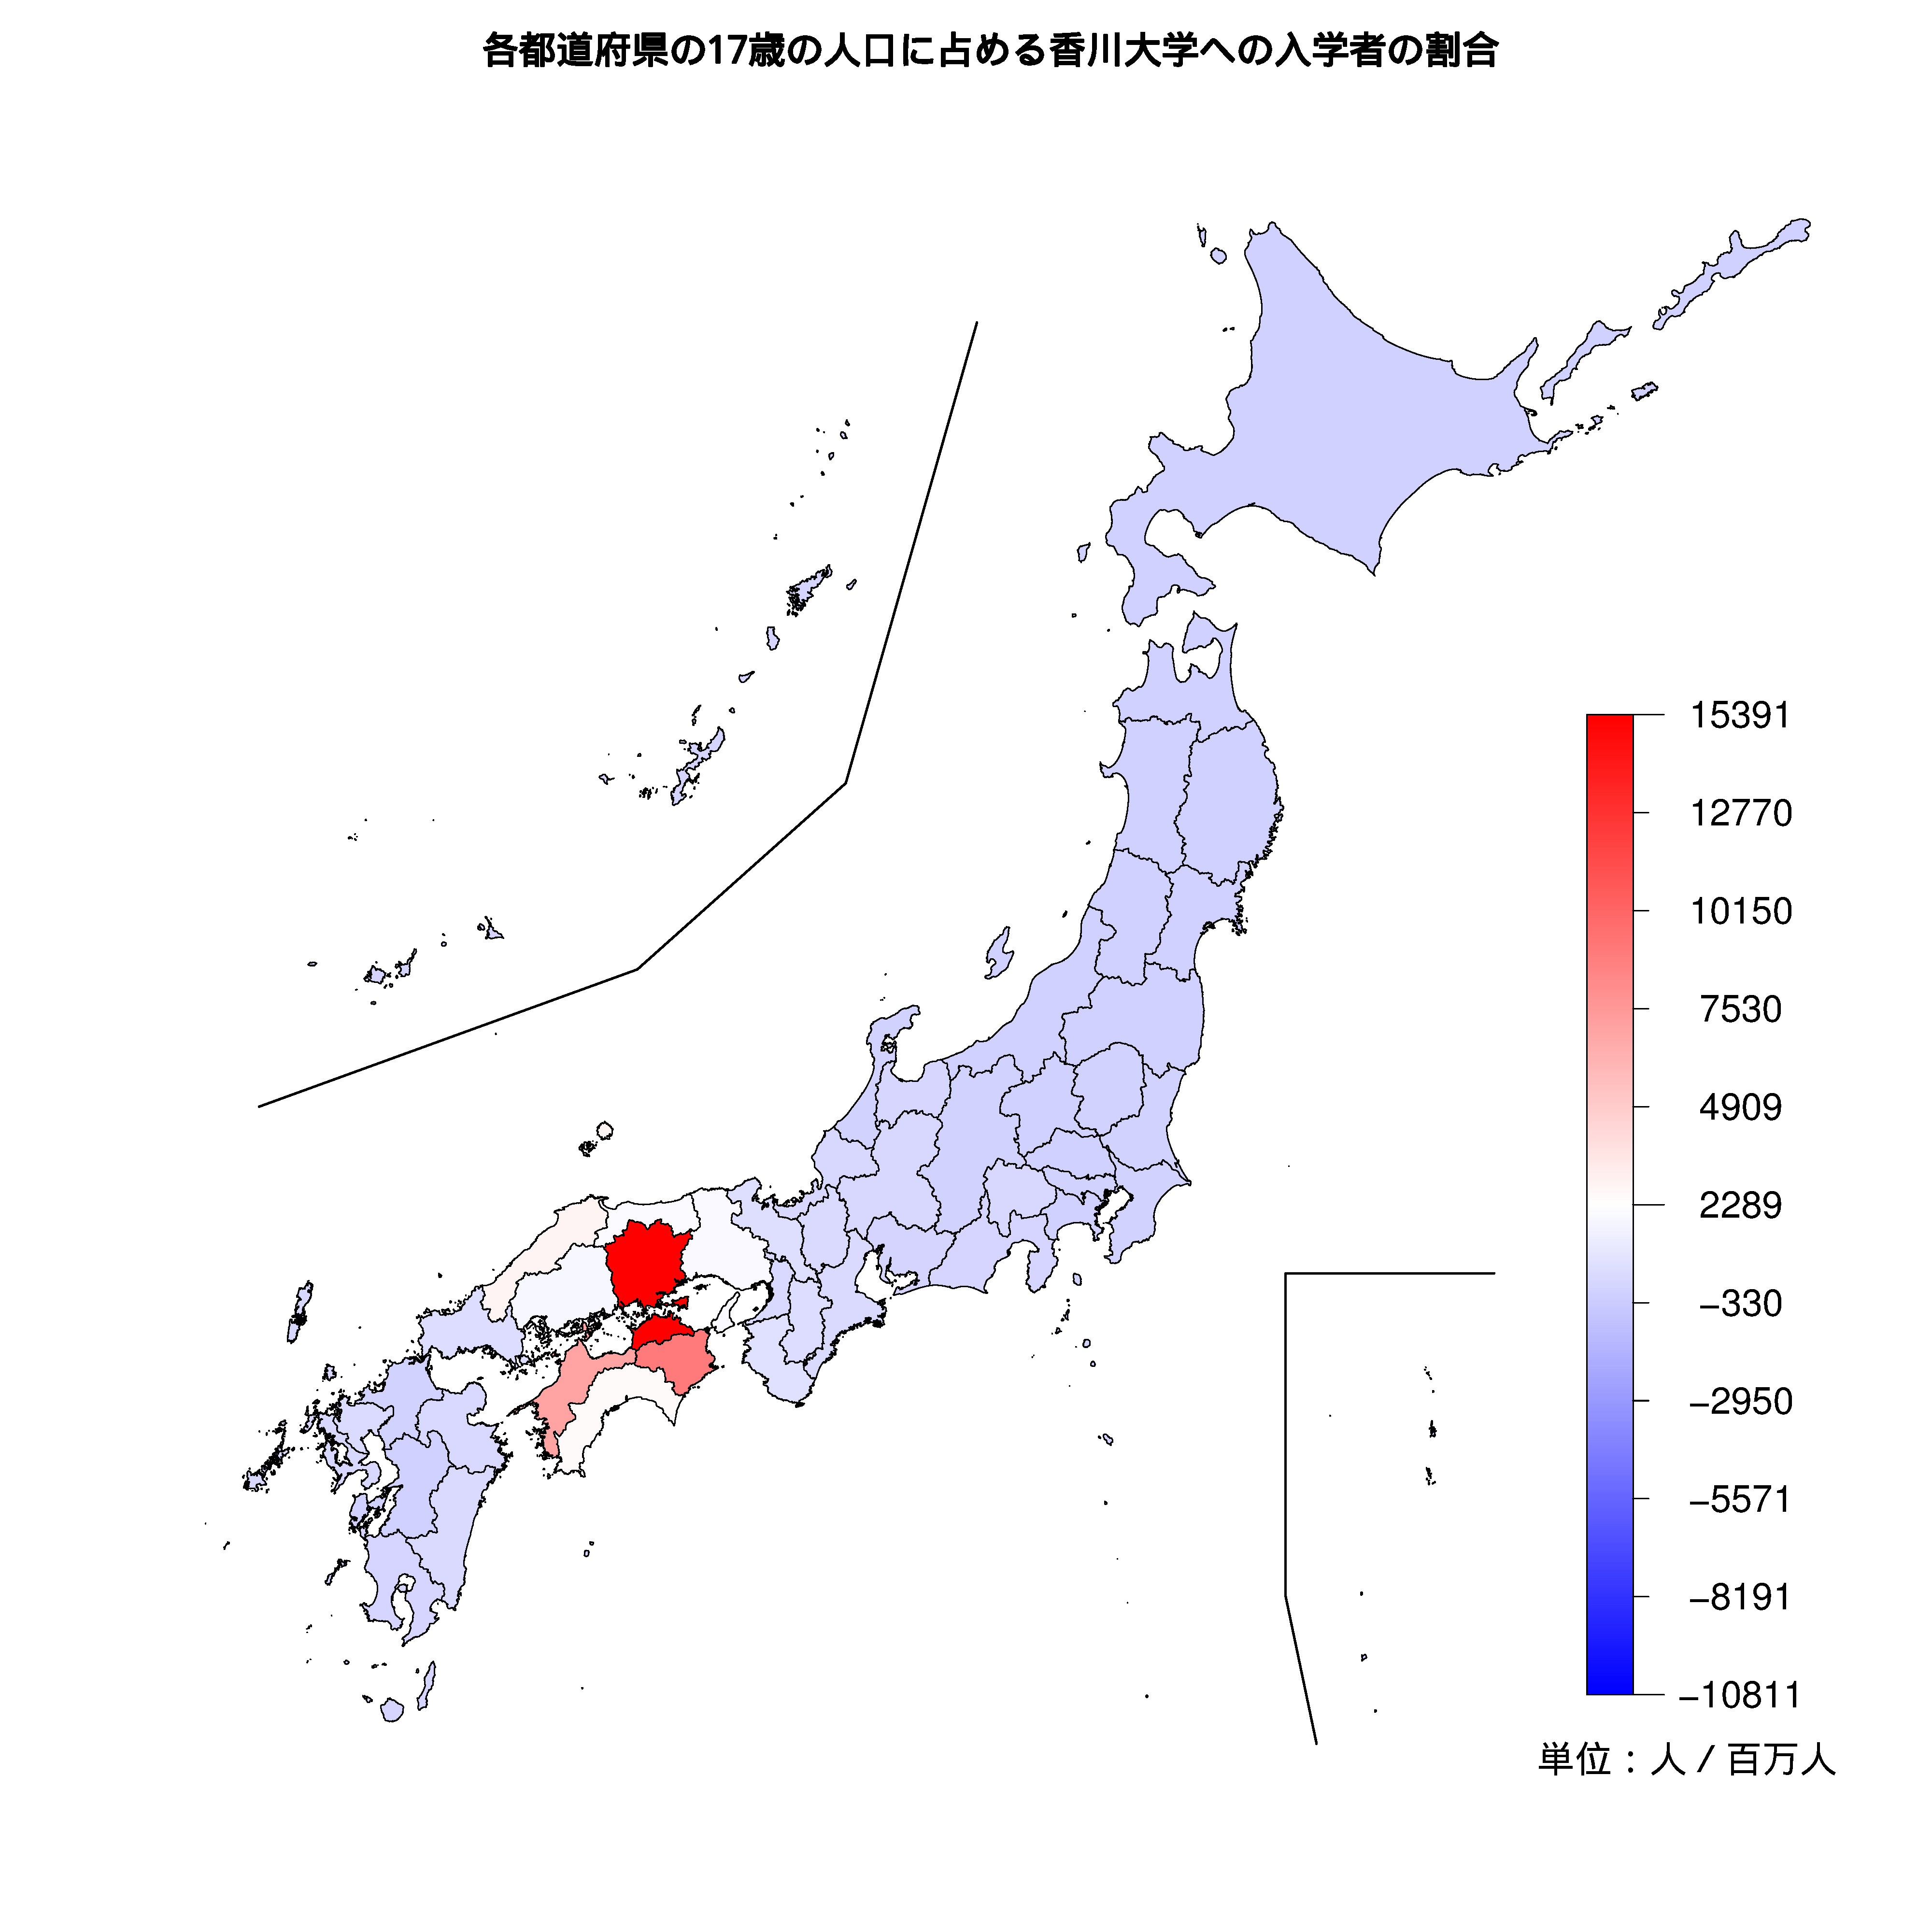 香川大学への入学者が多い都道府県の色分け地図